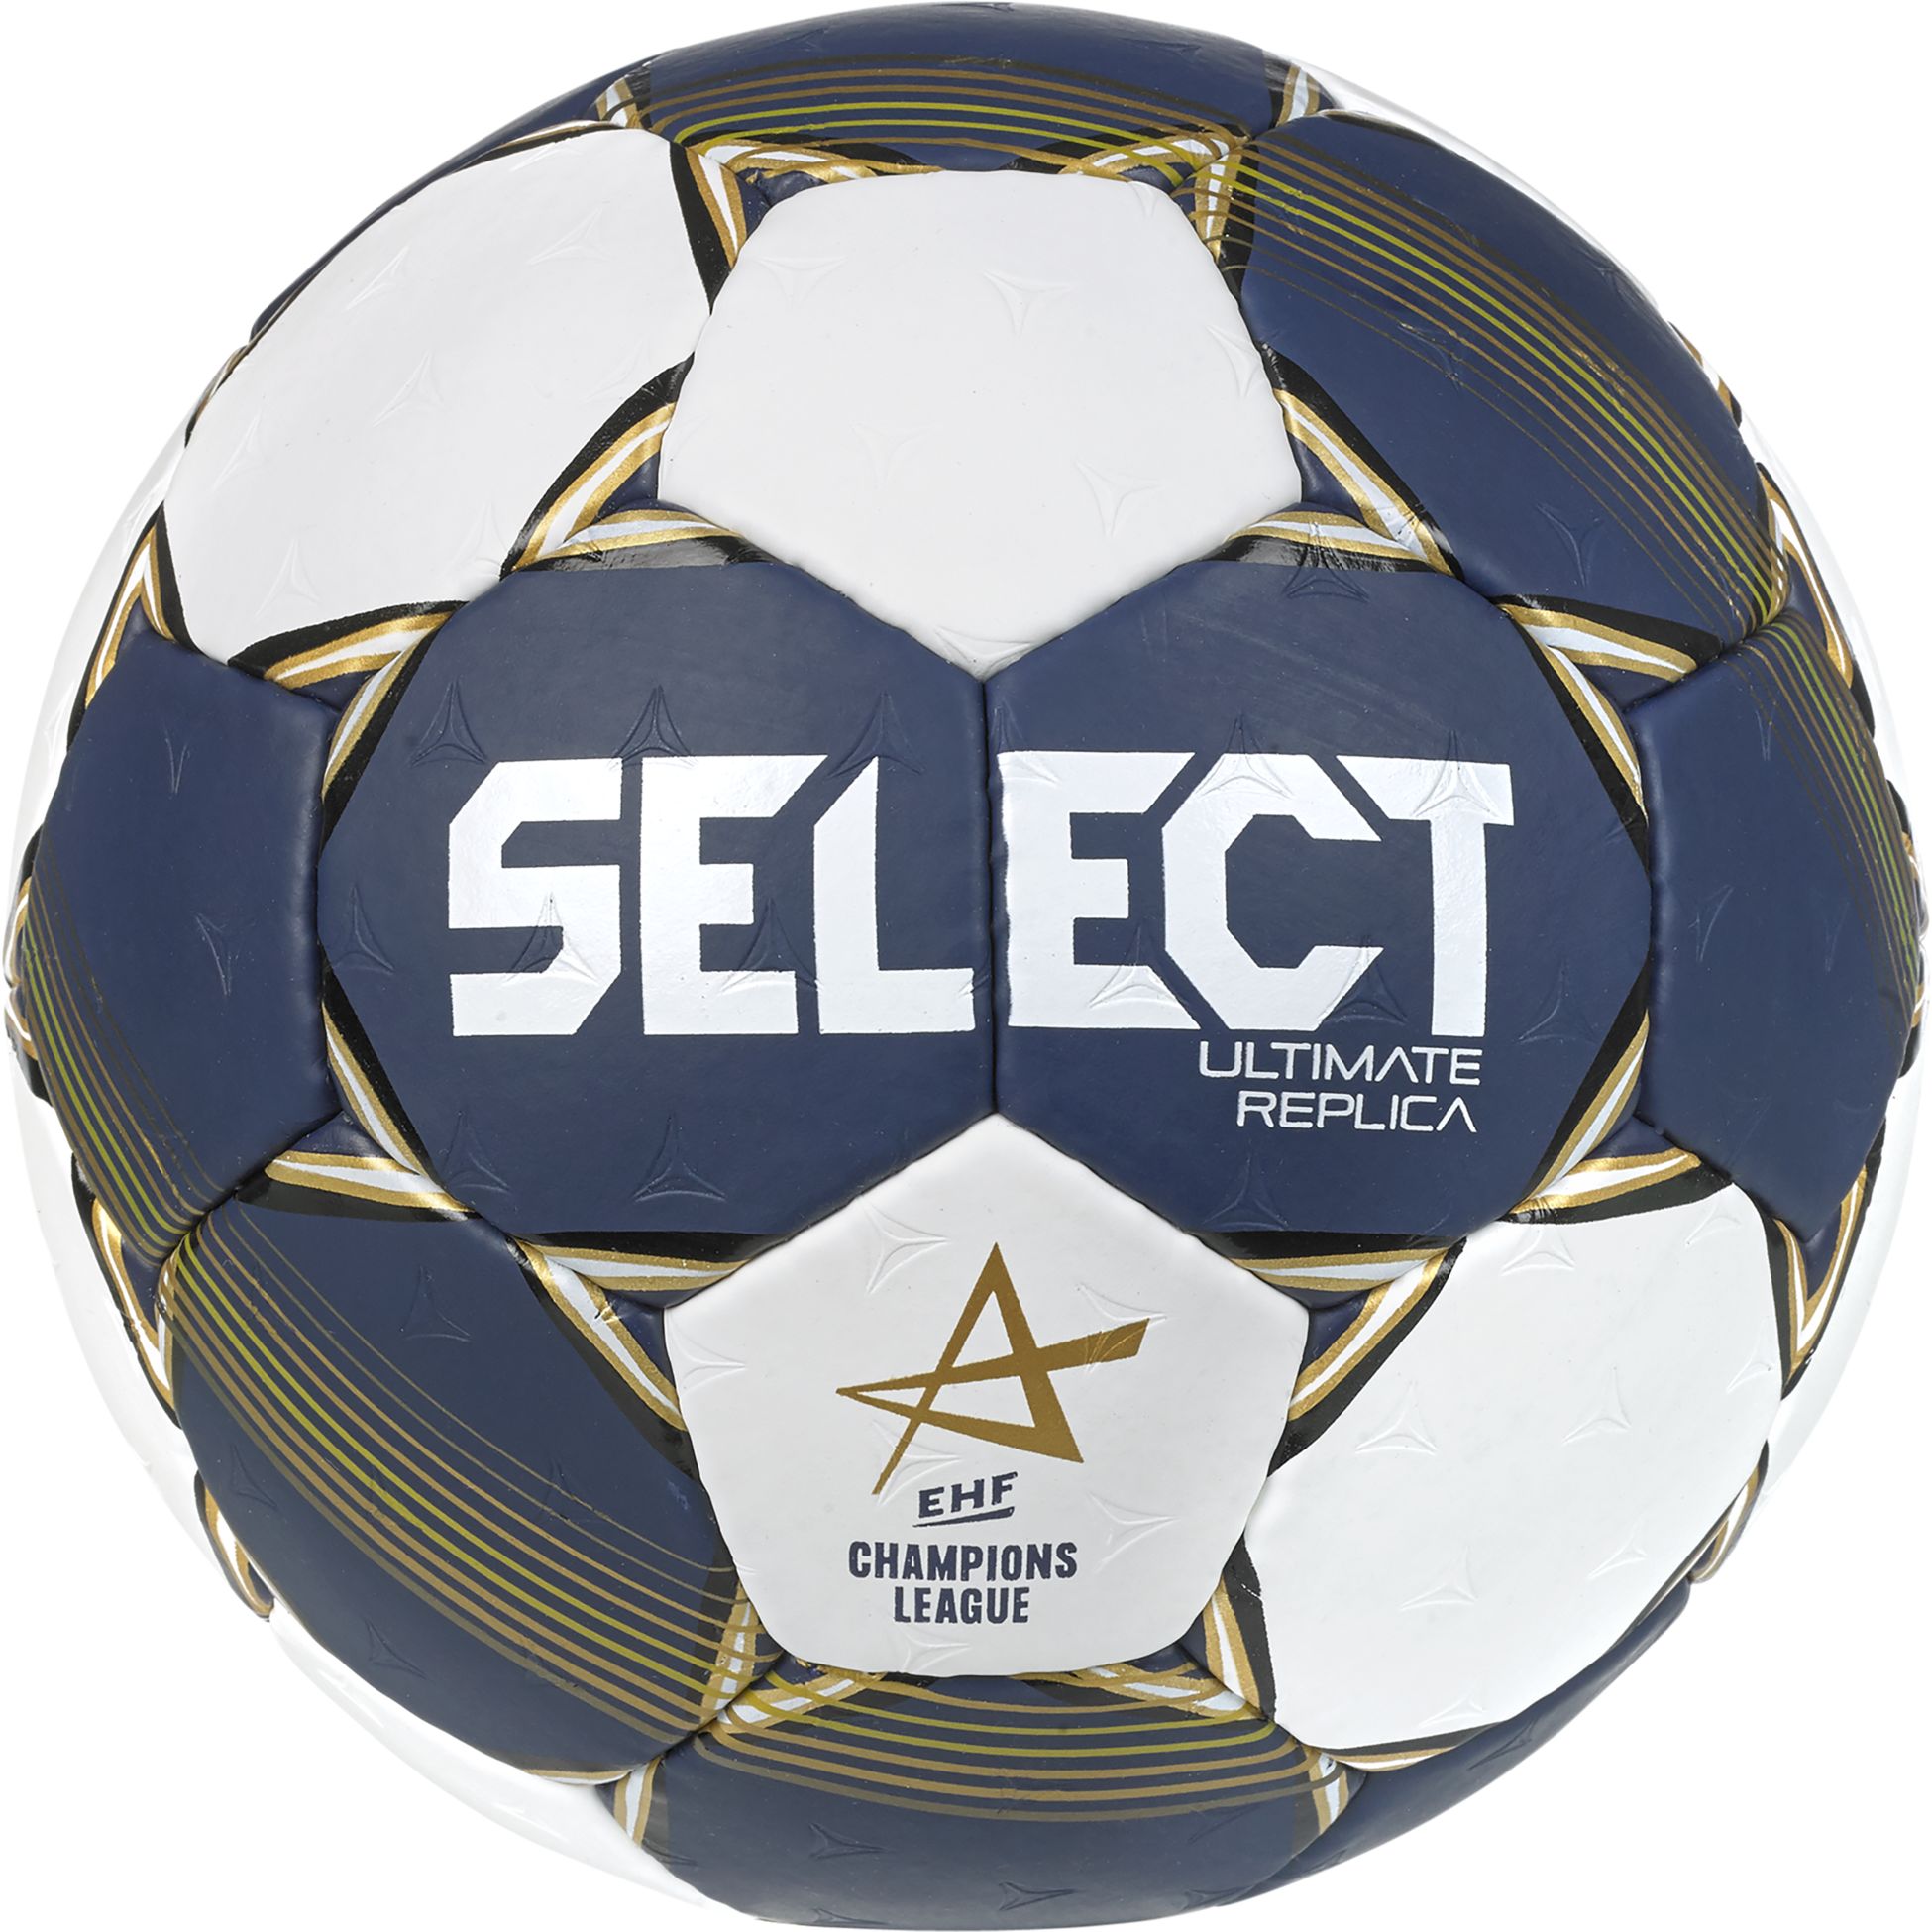 SELECT, Replica EHF Champions League v22